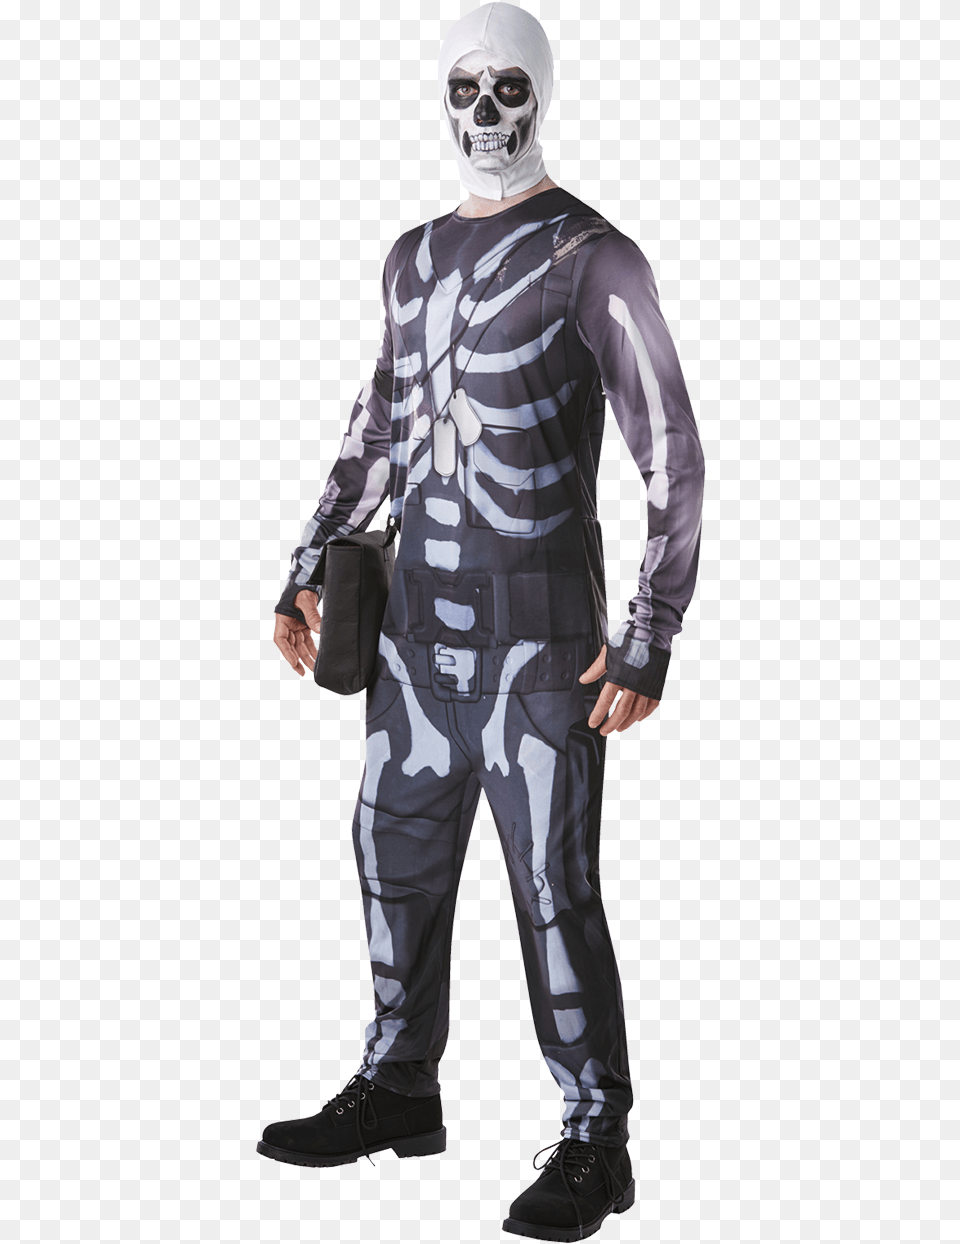 Og Skull Trooper Fortnite Download Skull Trooper Costume, Adult, Person, Man, Male Png Image